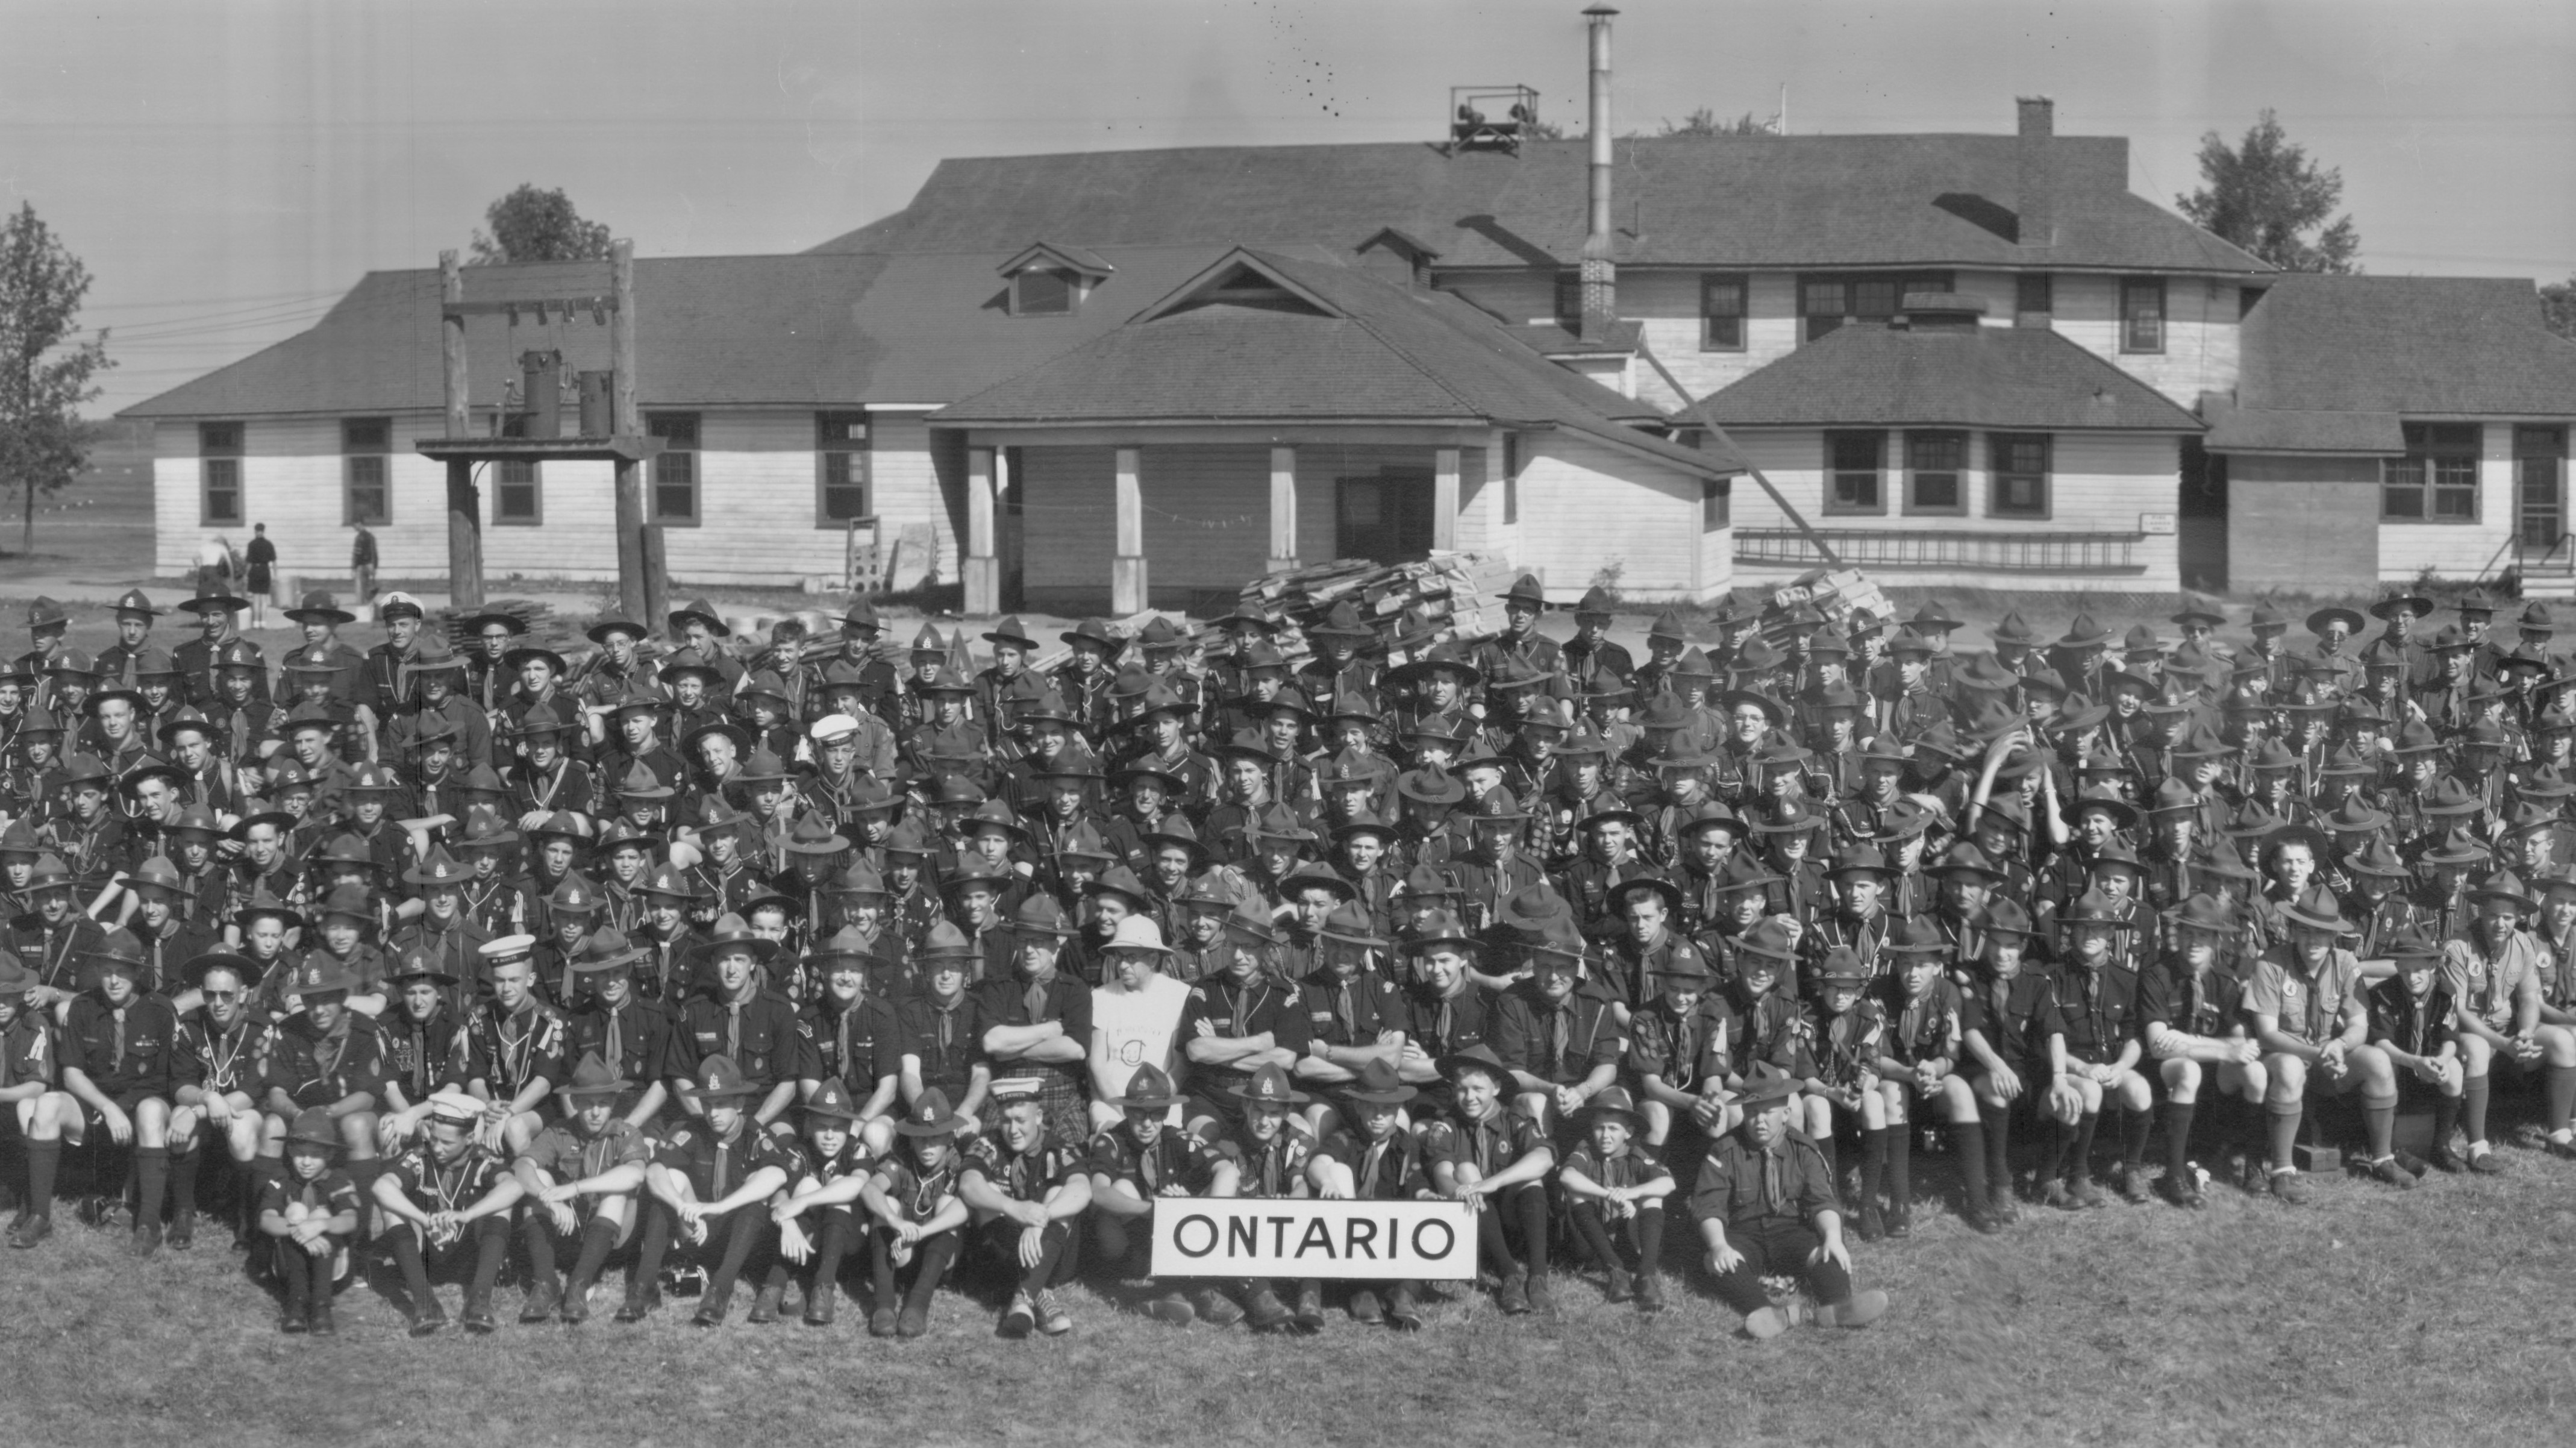 1953 World Jamboree group - Ontario (cropped) - taken near Las Vegas, Nevada